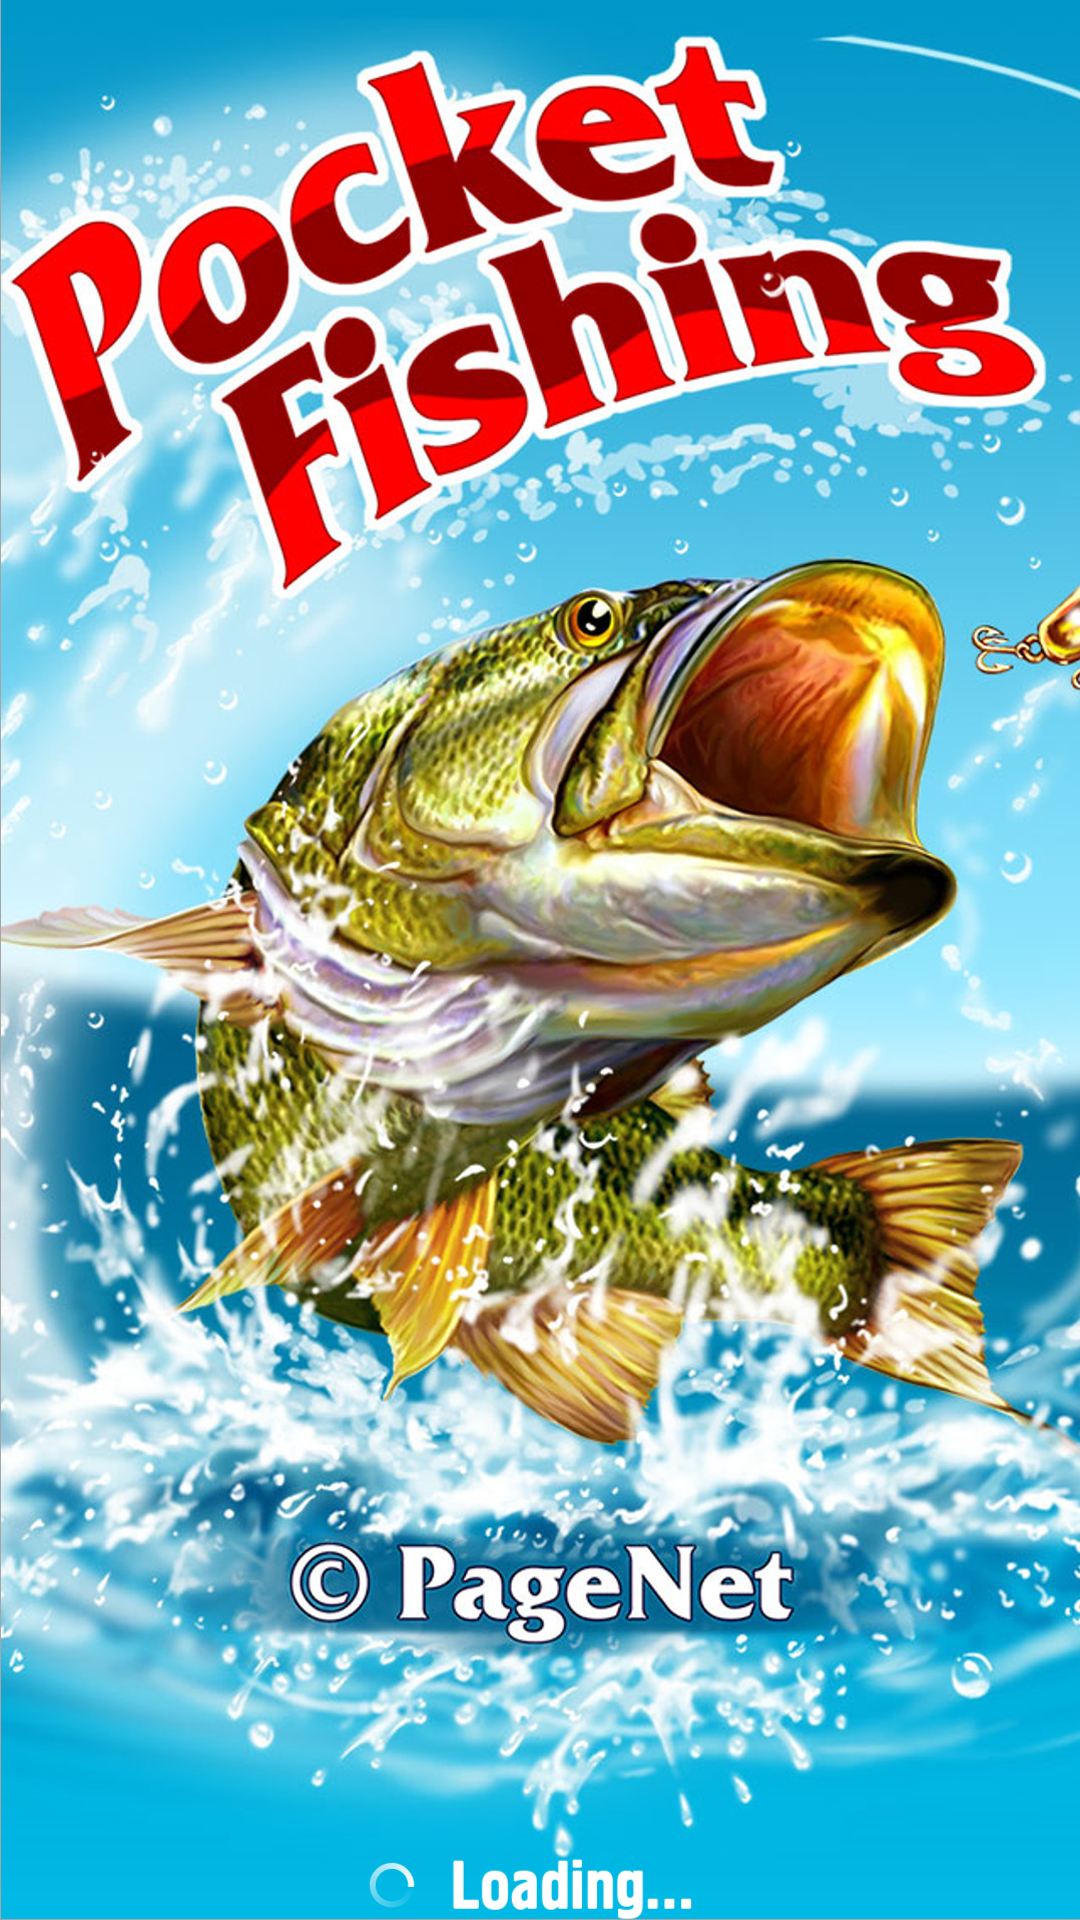 Android application Pocket Fishing screenshort